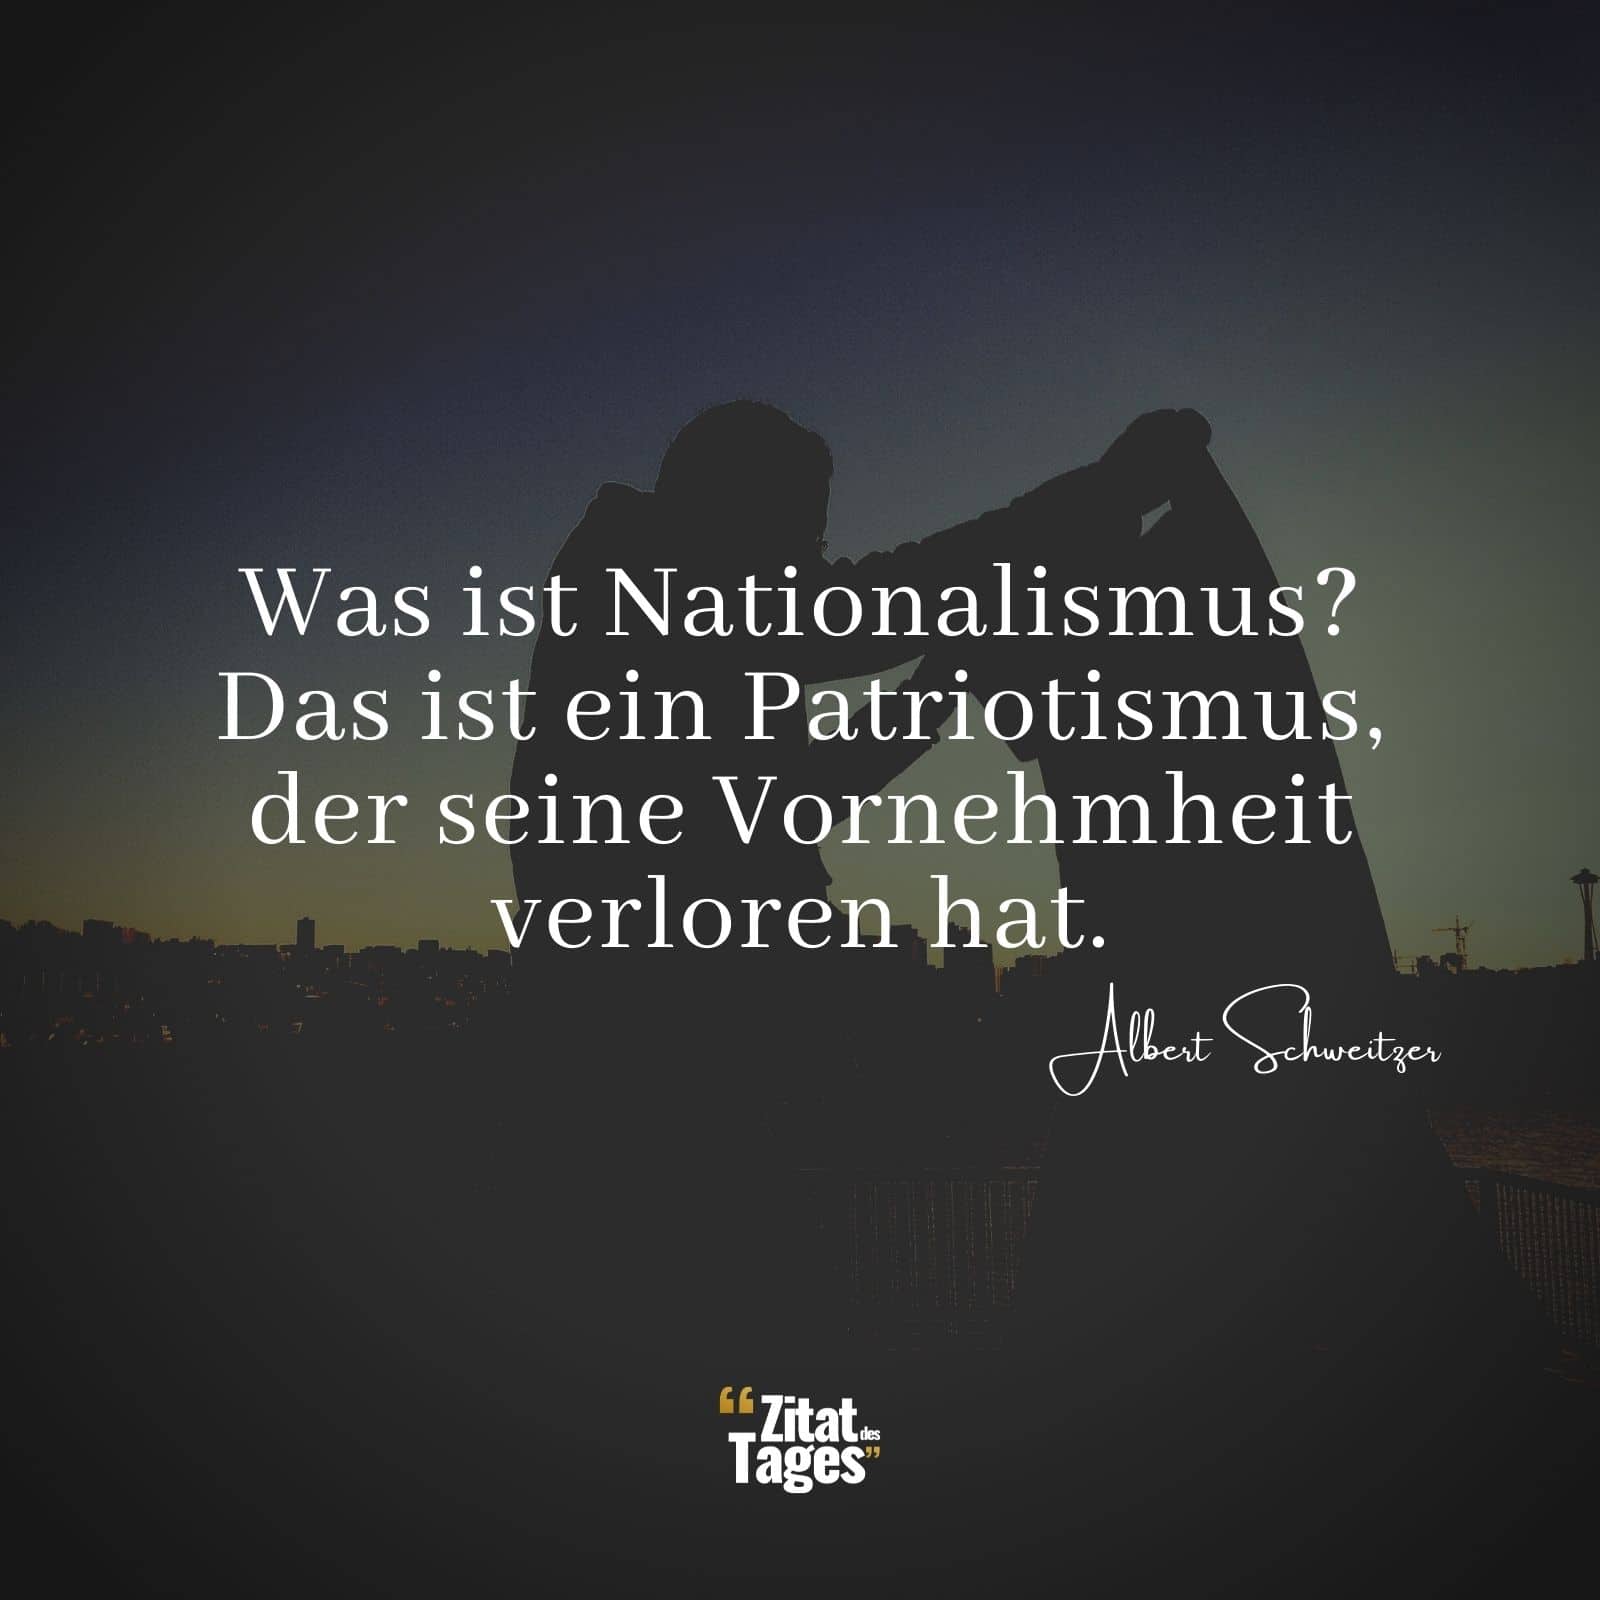 Was ist Nationalismus? Das ist ein Patriotismus, der seine Vornehmheit verloren hat. - Albert Schweitzer